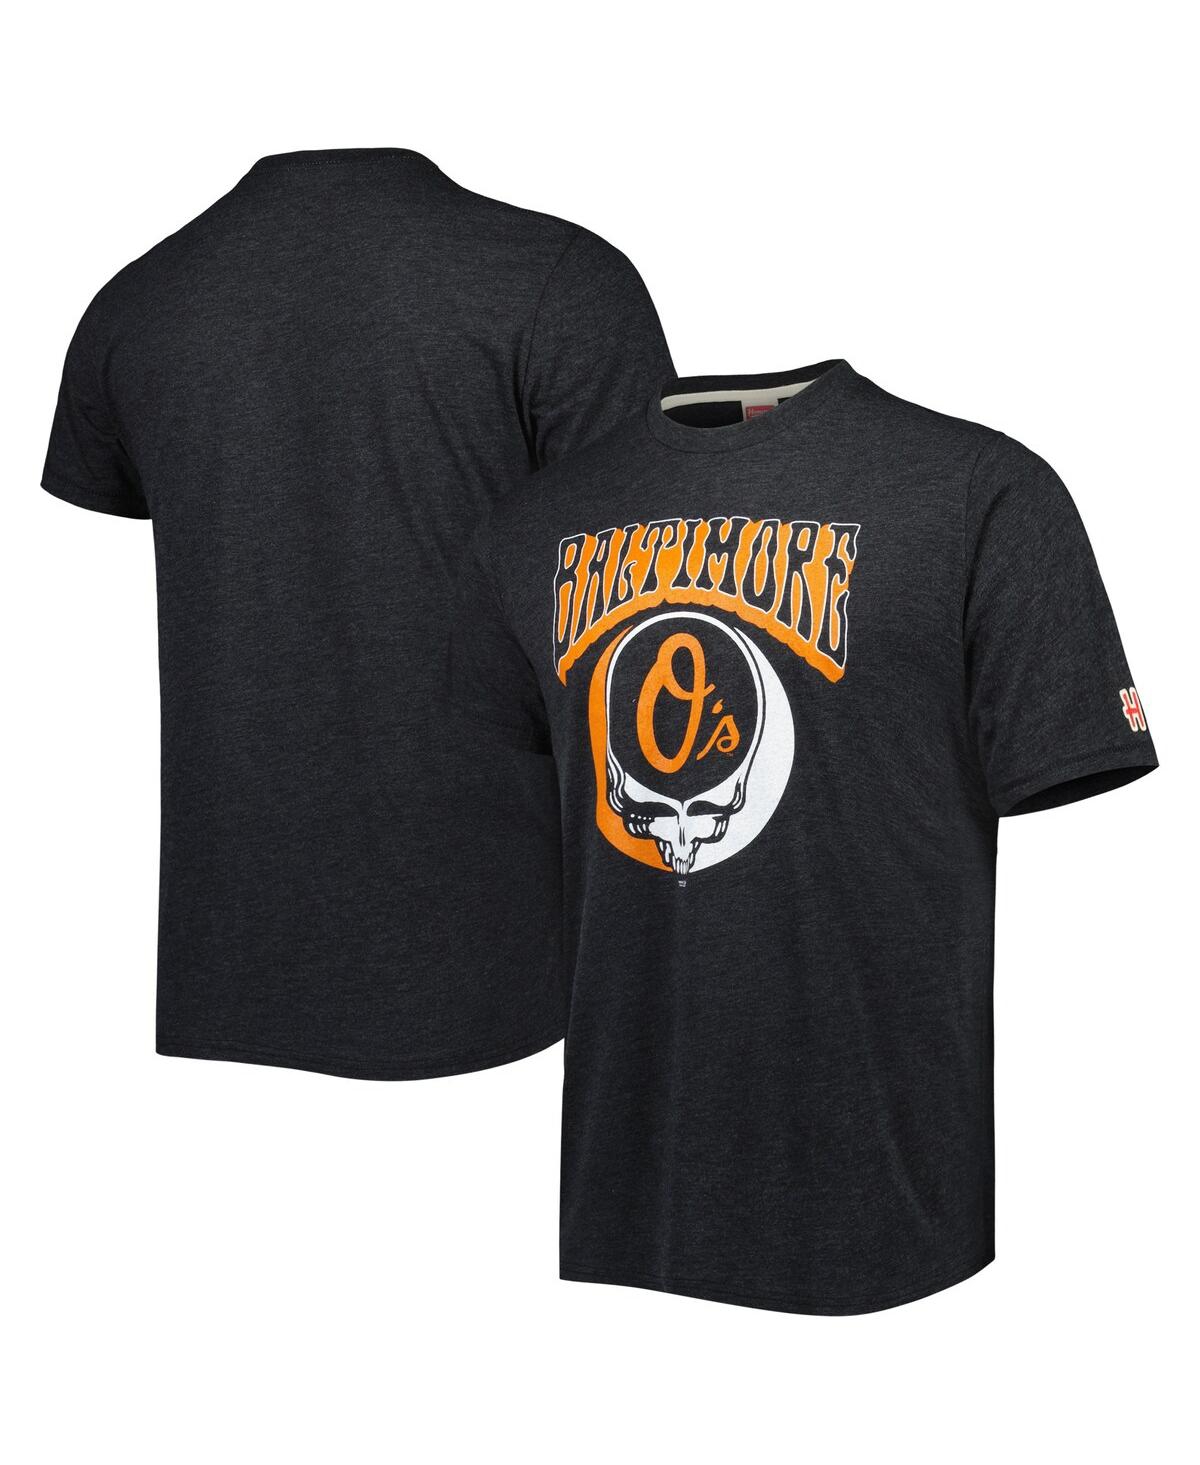 Men's Homage Charcoal Baltimore Orioles Grateful Dead Tri-Blend T-shirt - Charcoal